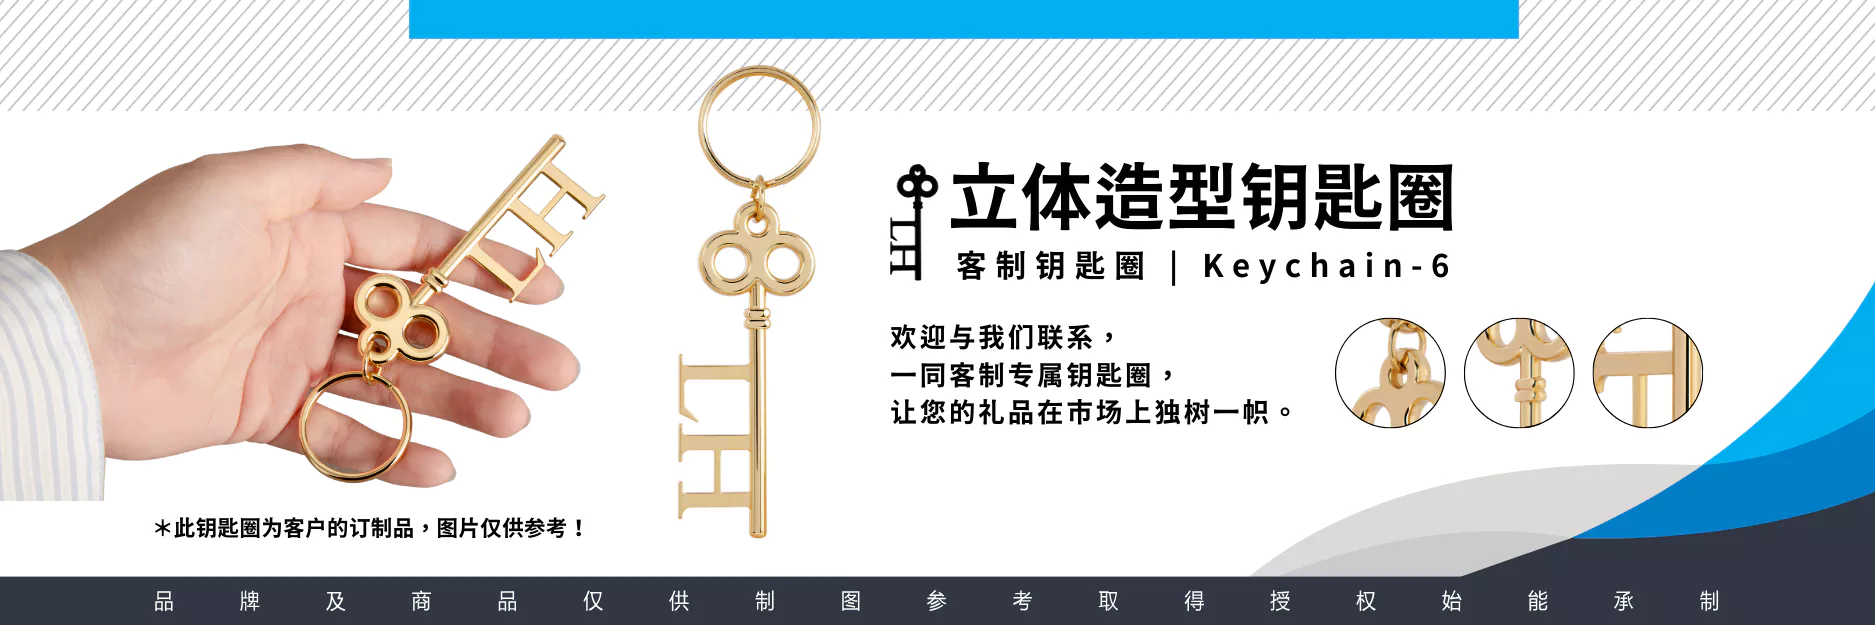 Keychain 6 客制立体钥匙造型钥匙圈 PC Cn